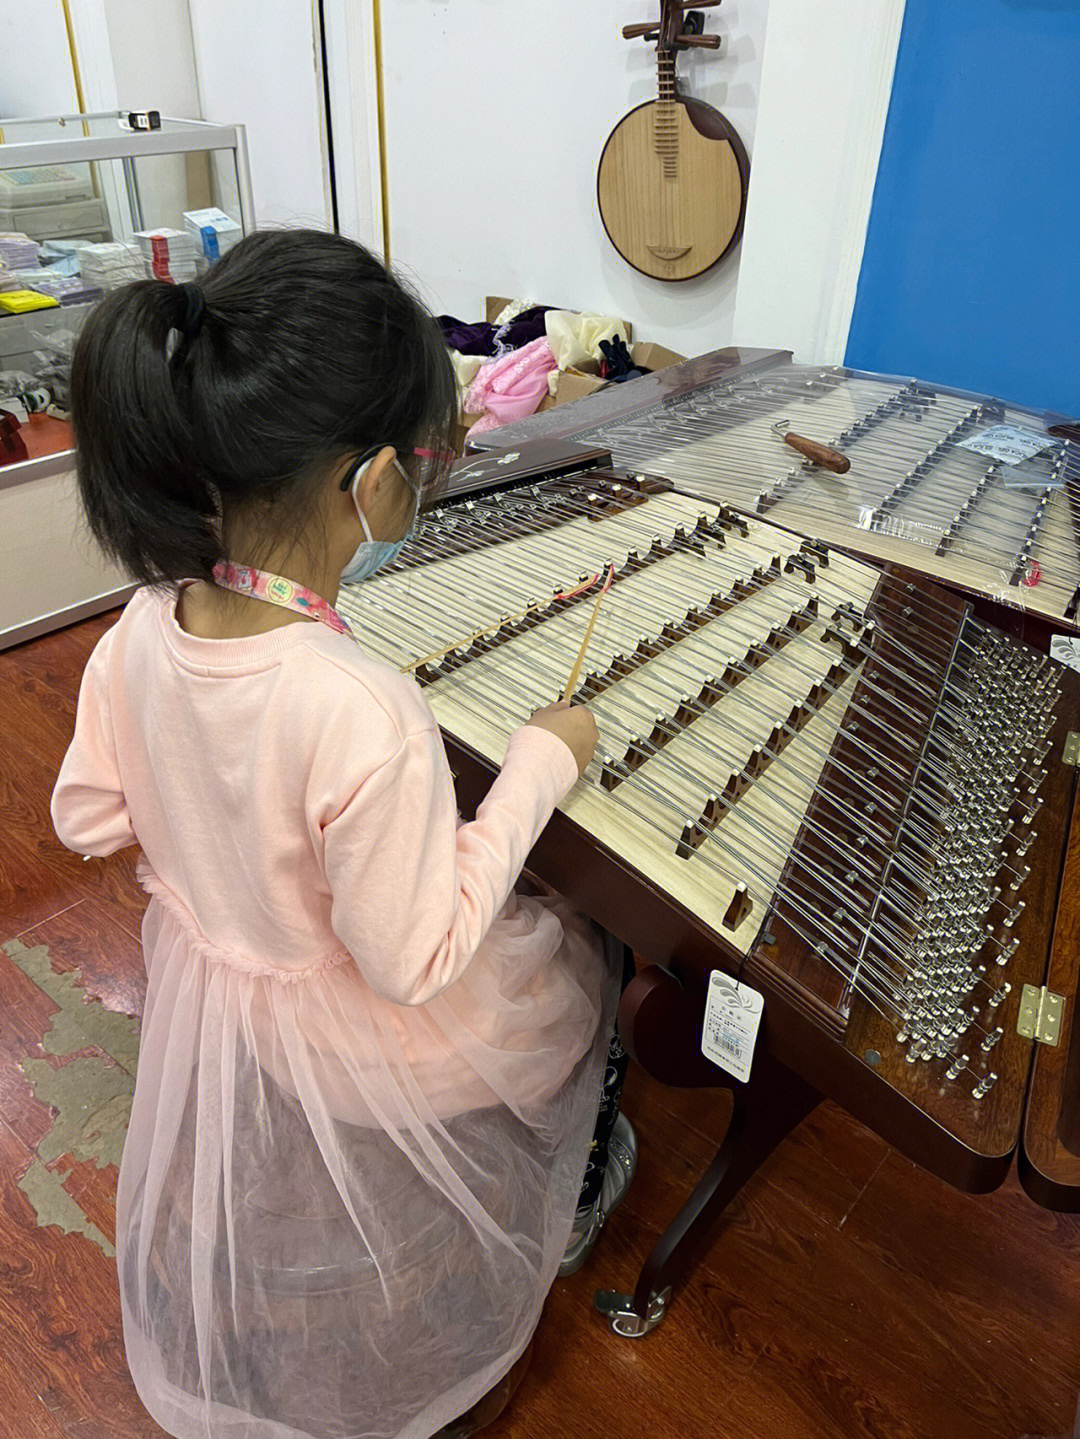 下周第一节课,加油孩子!深圳有孩子的扬琴交流群吗?